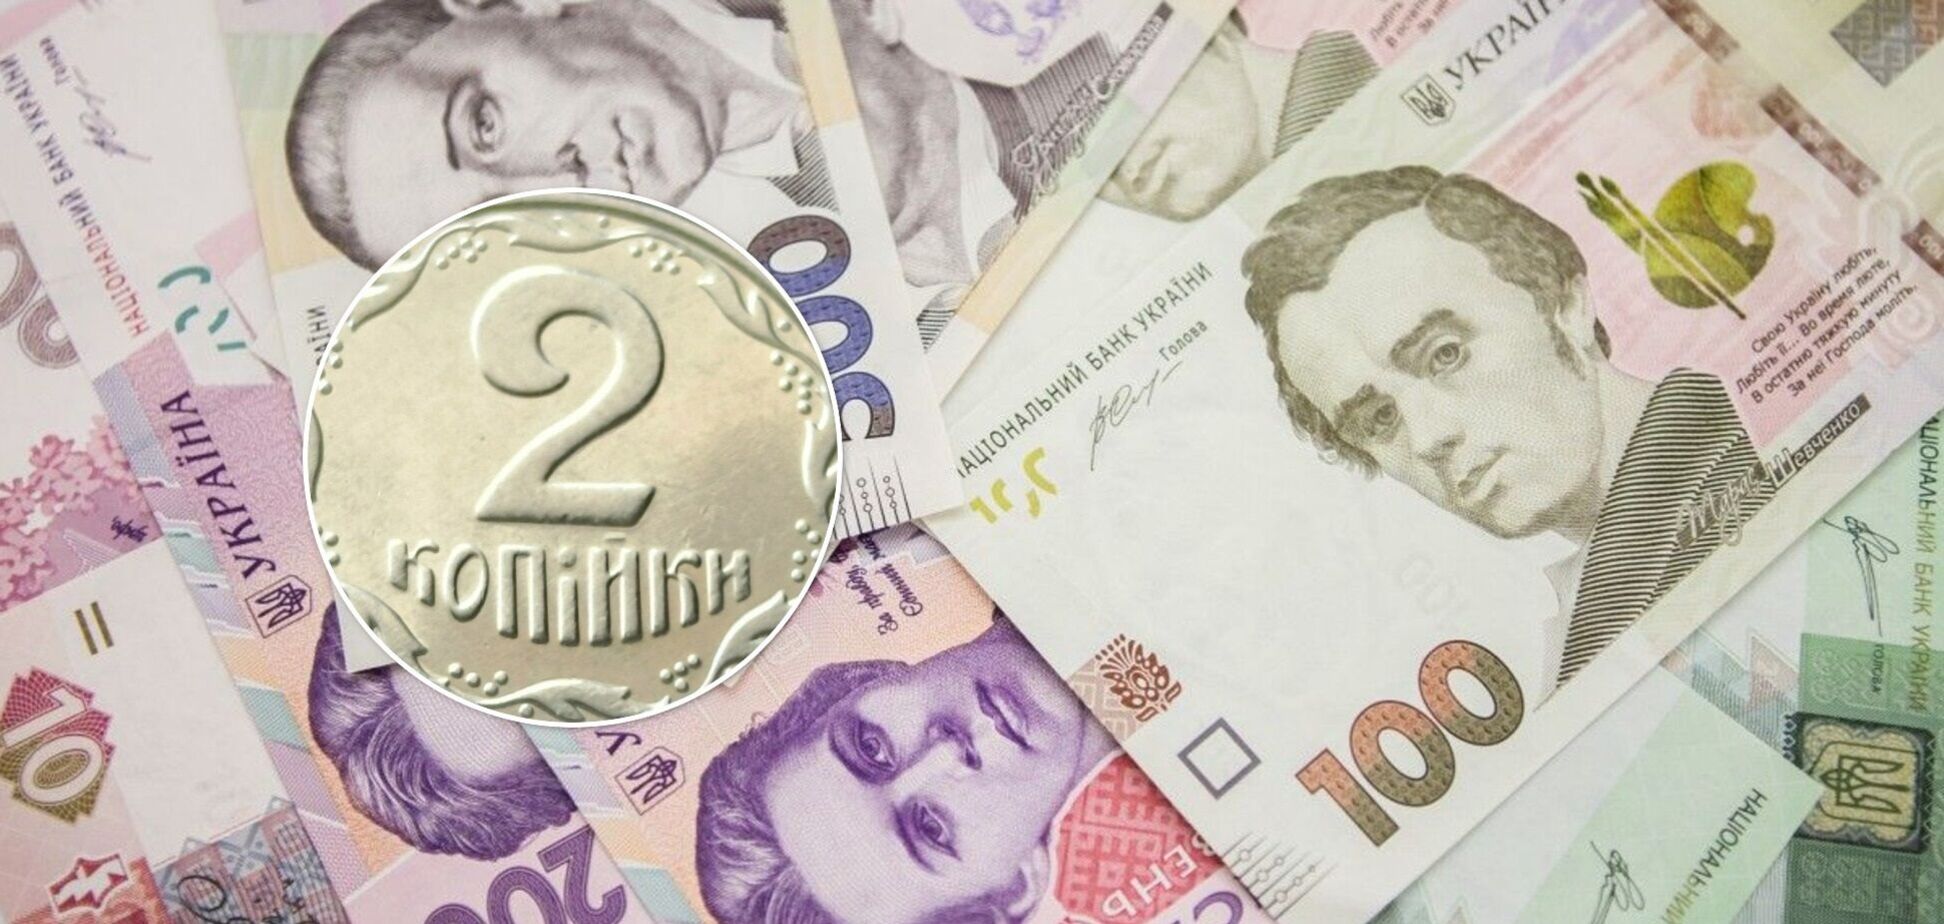 В Україні ціна монети в 2 копійки зросла від 1 грн до 3,5 тисяч